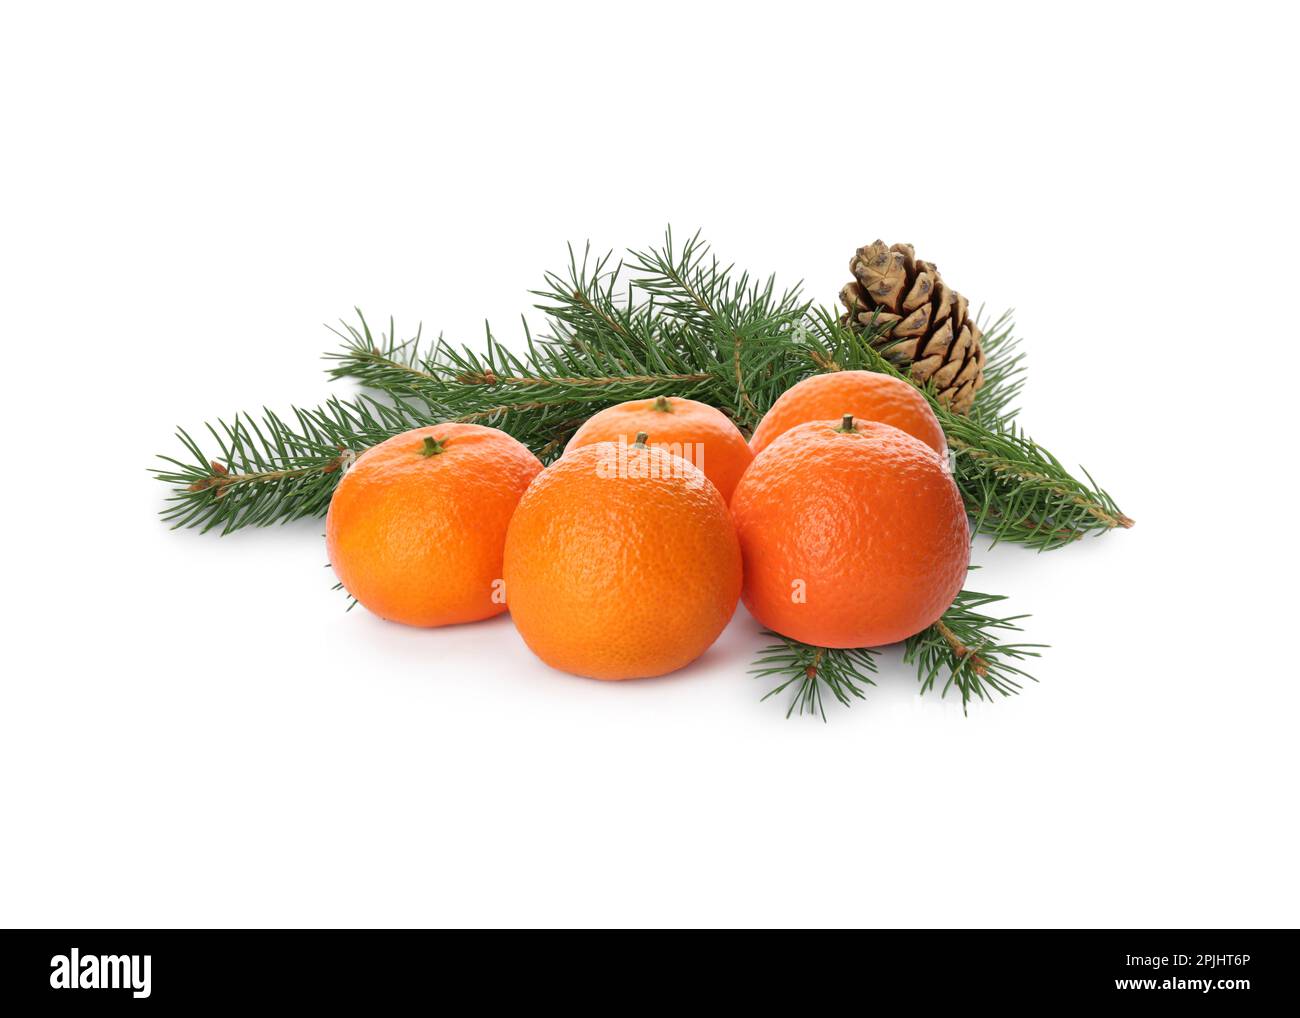 Bella composizione con tangerini maturi, rami di abete verde e cono su fondo bianco Foto Stock